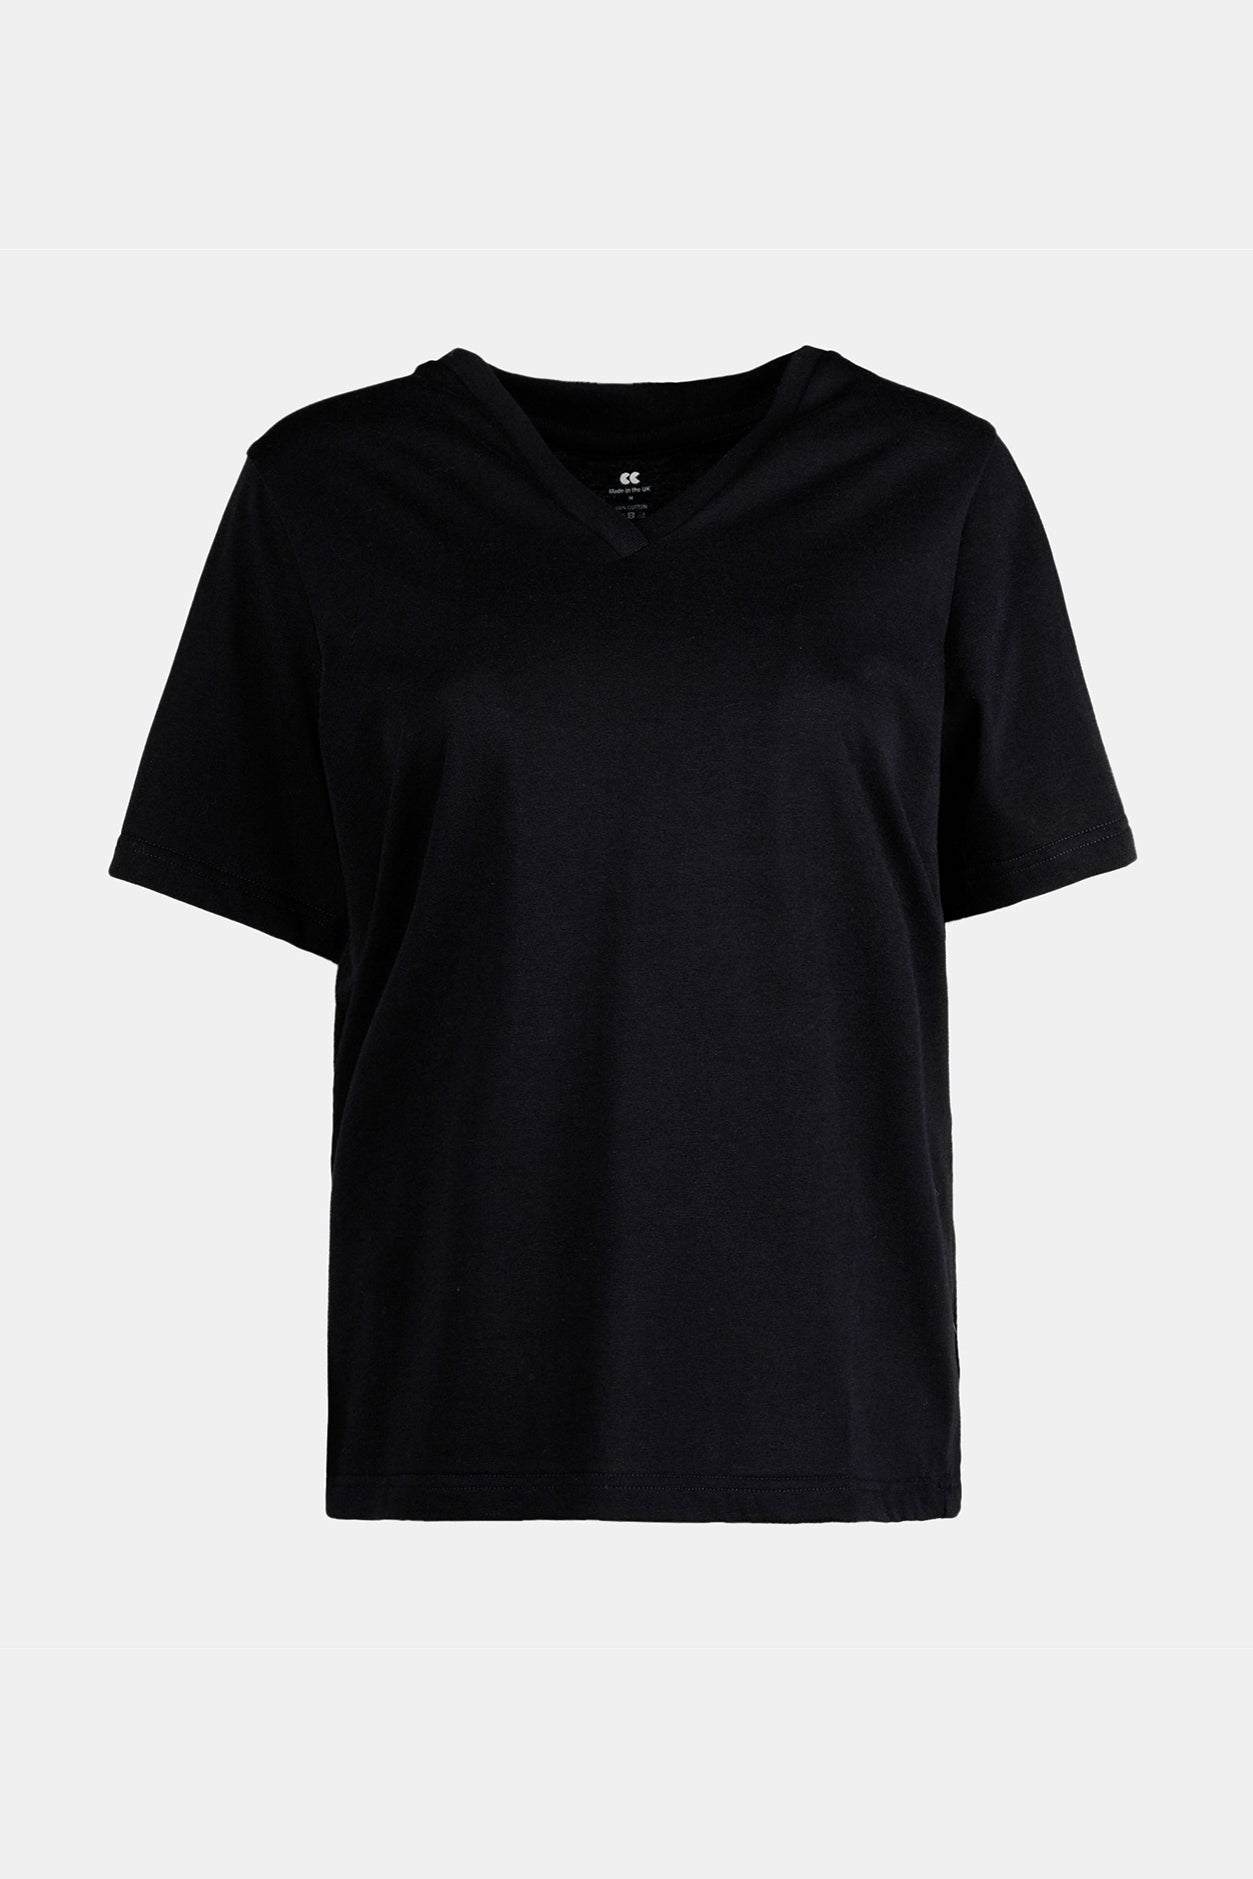 Women's V-Neck T-Shirt - Black